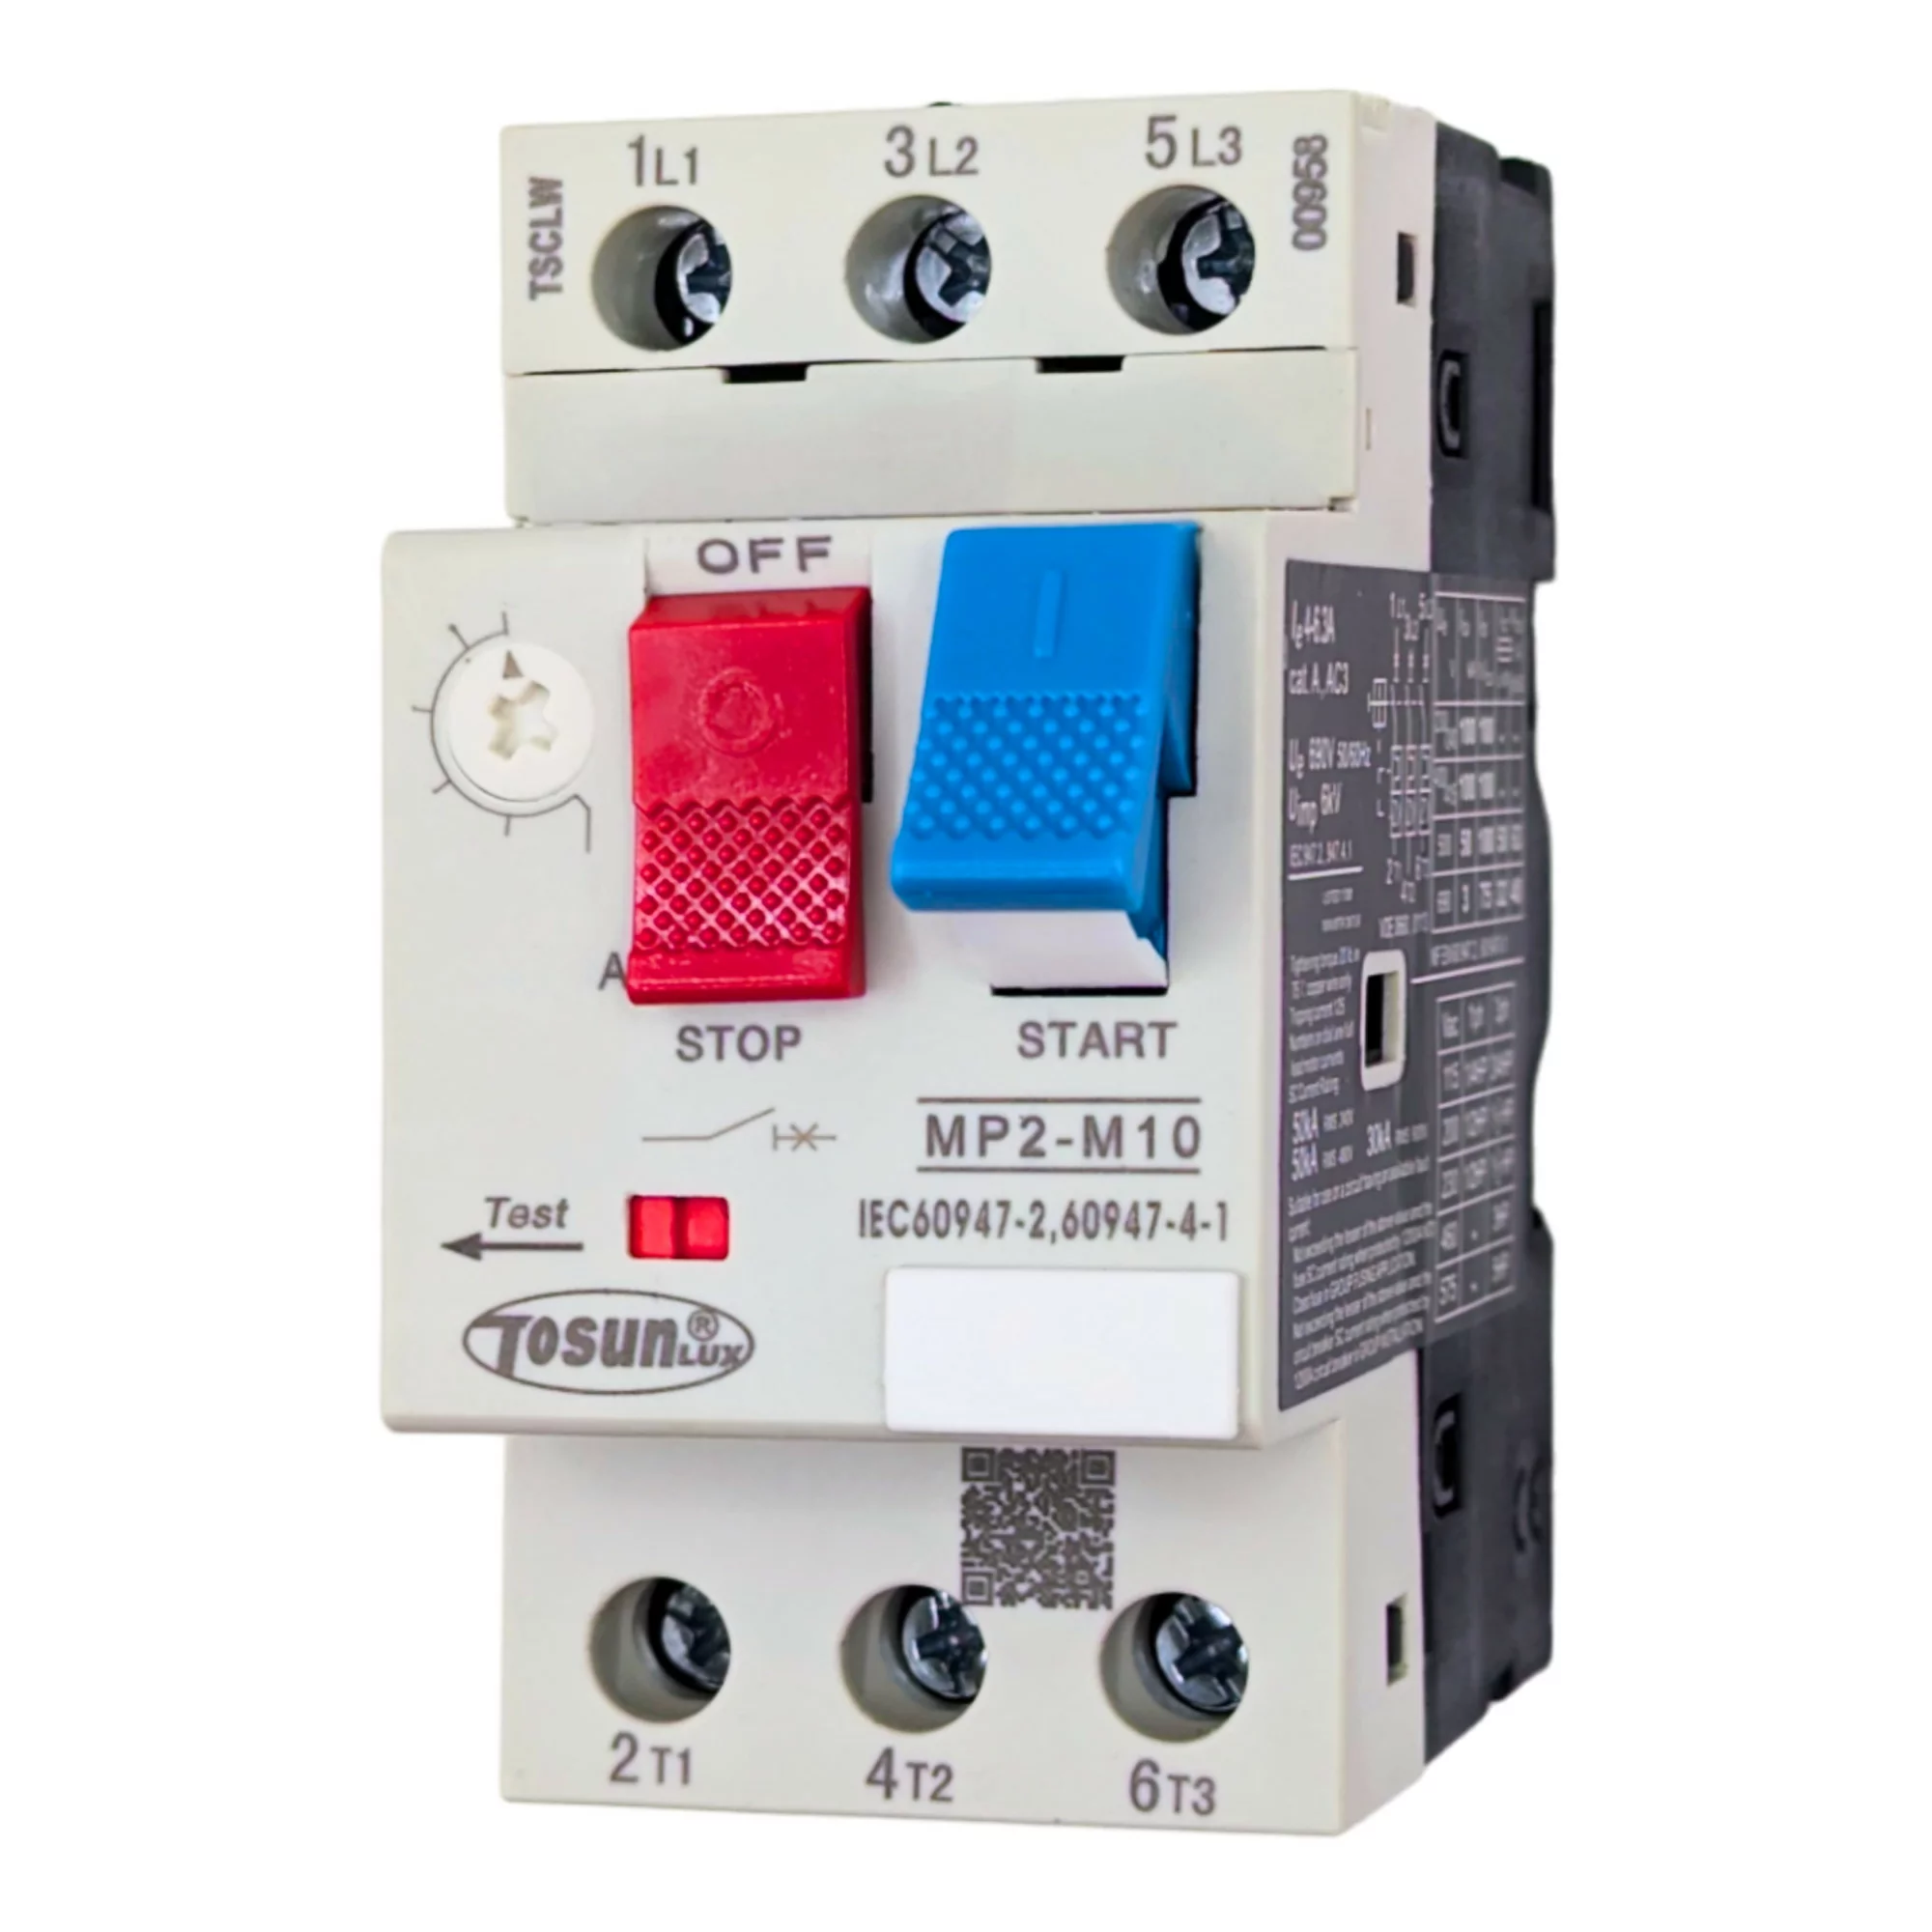 Interruptor diferencial 10mA  Máxima garantía y seguridad